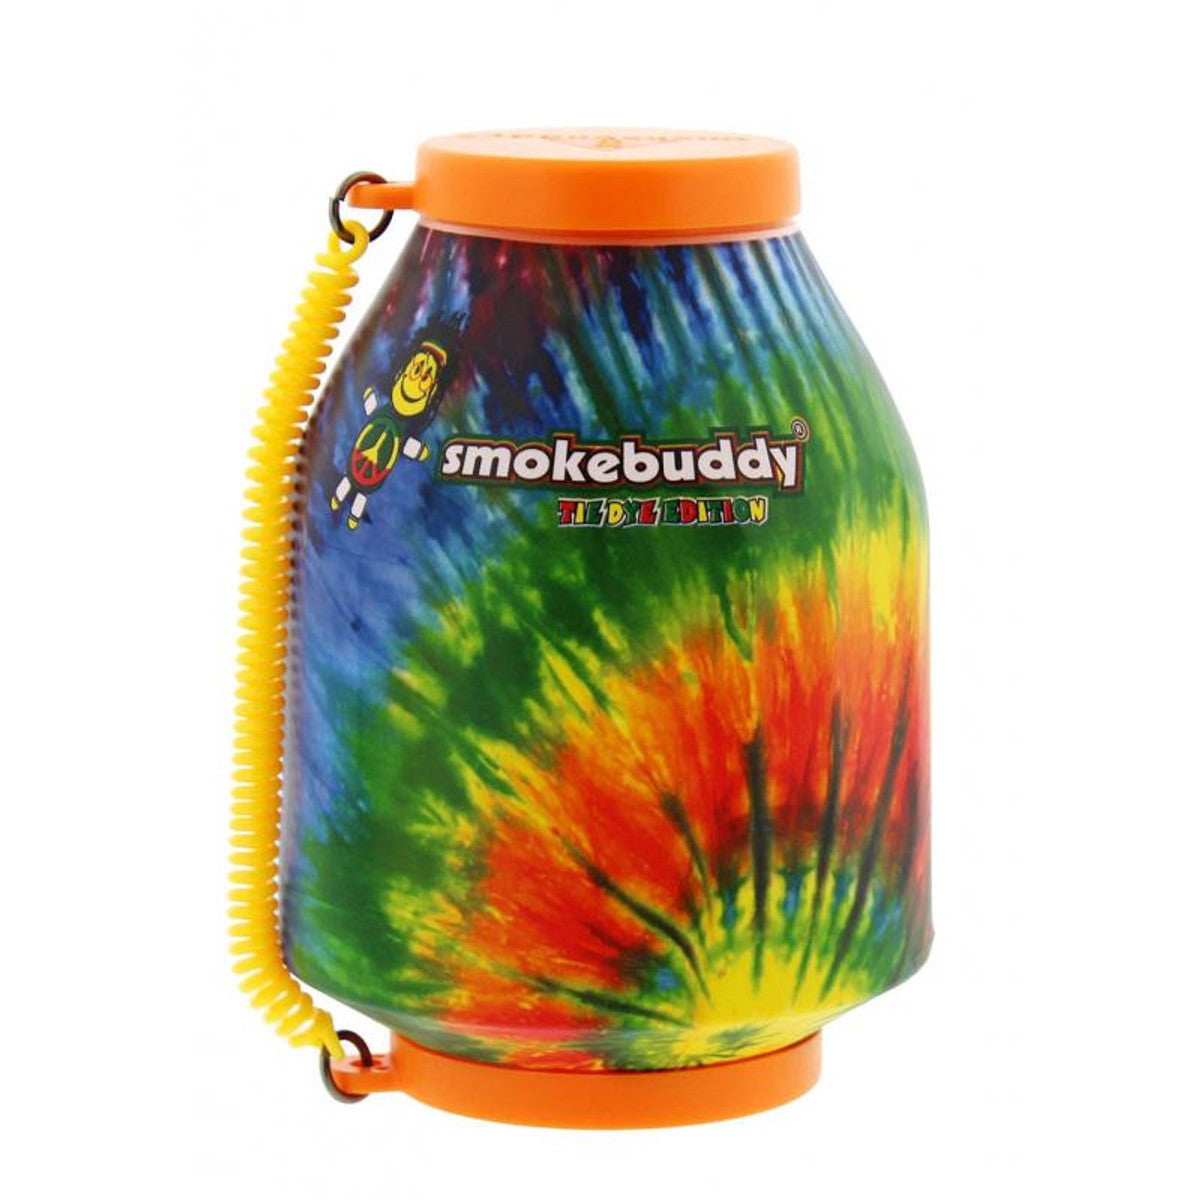 Smokebuddy PERSONAL AIR FILTERS Smoke Removal